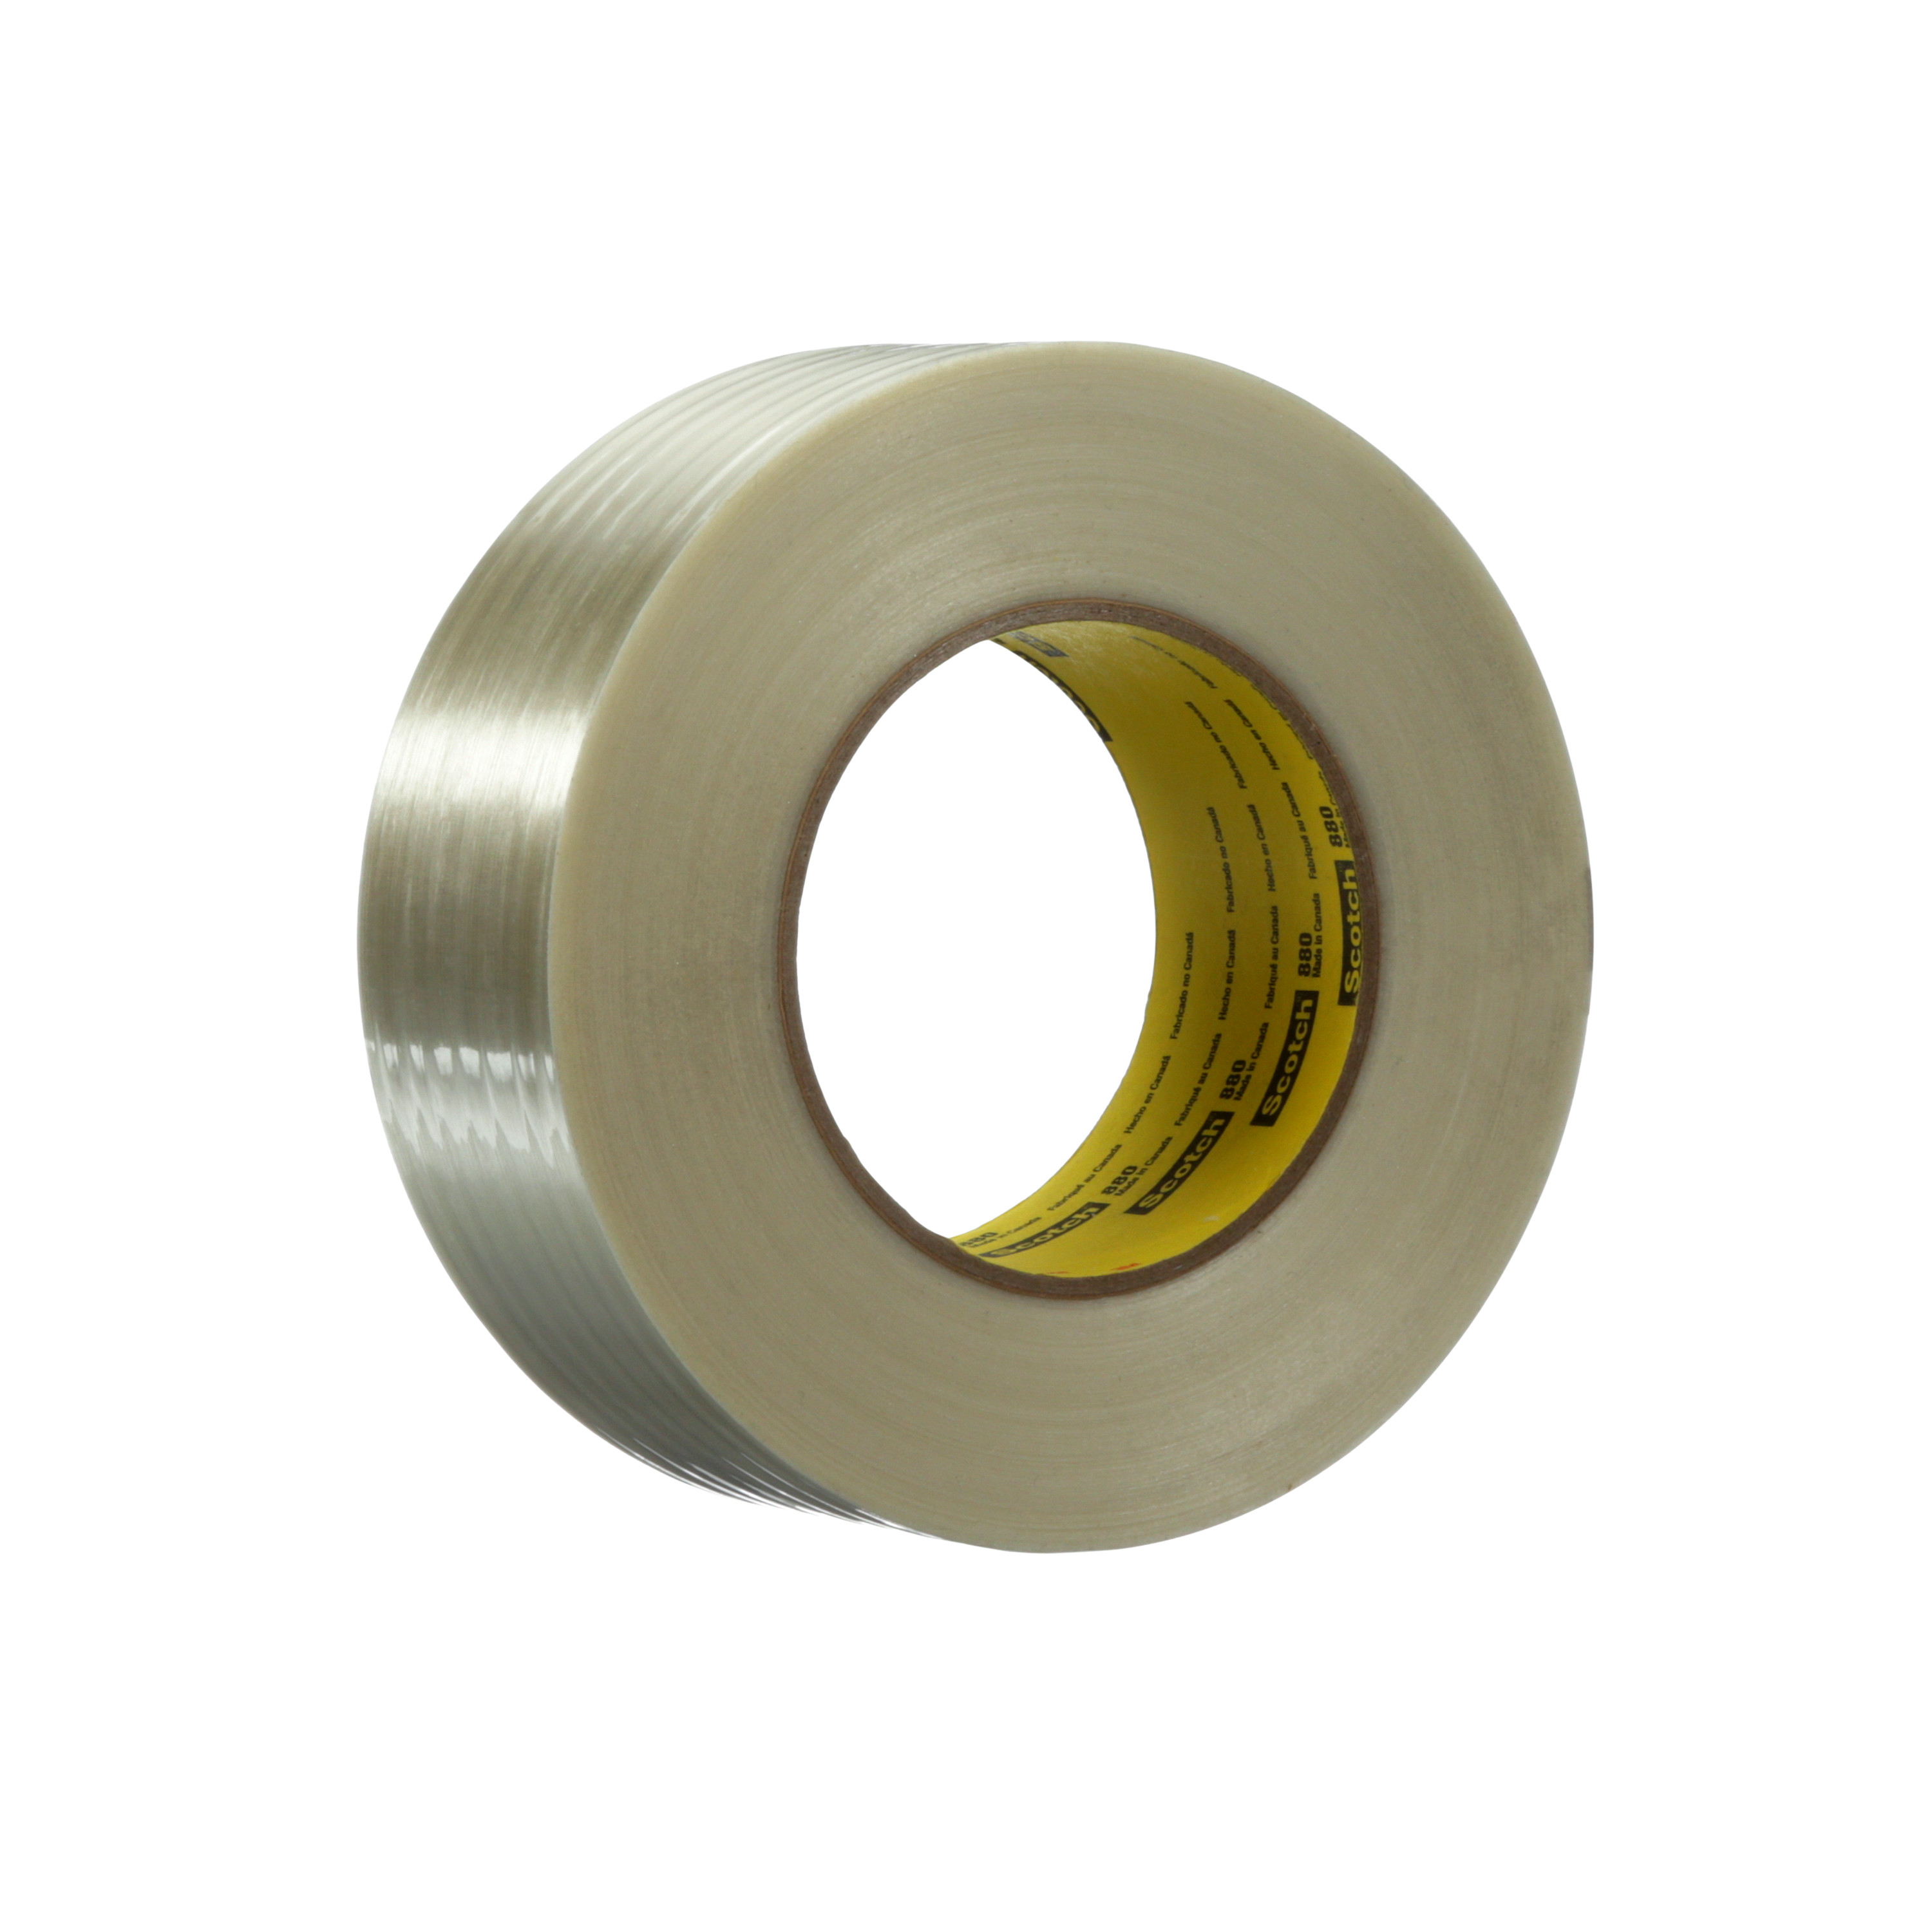 Scotch® Filament Tape 880, Clear, 36 mm x 55 m, 7.7 mil, 24 rolls per
case